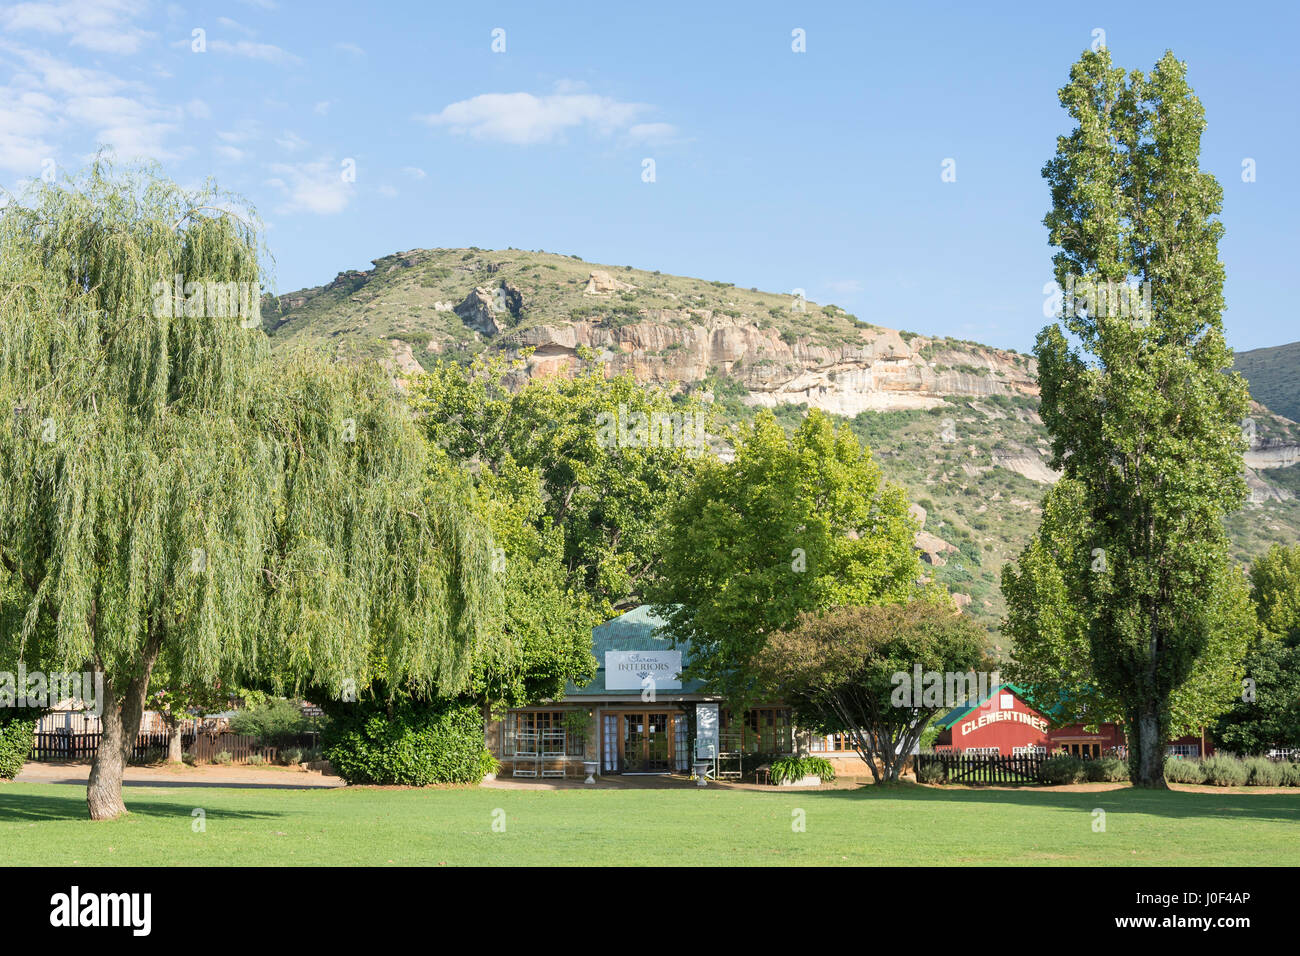 La Plaza Verde, Clarens, de la provincia de Free State, Sudáfrica Foto de stock